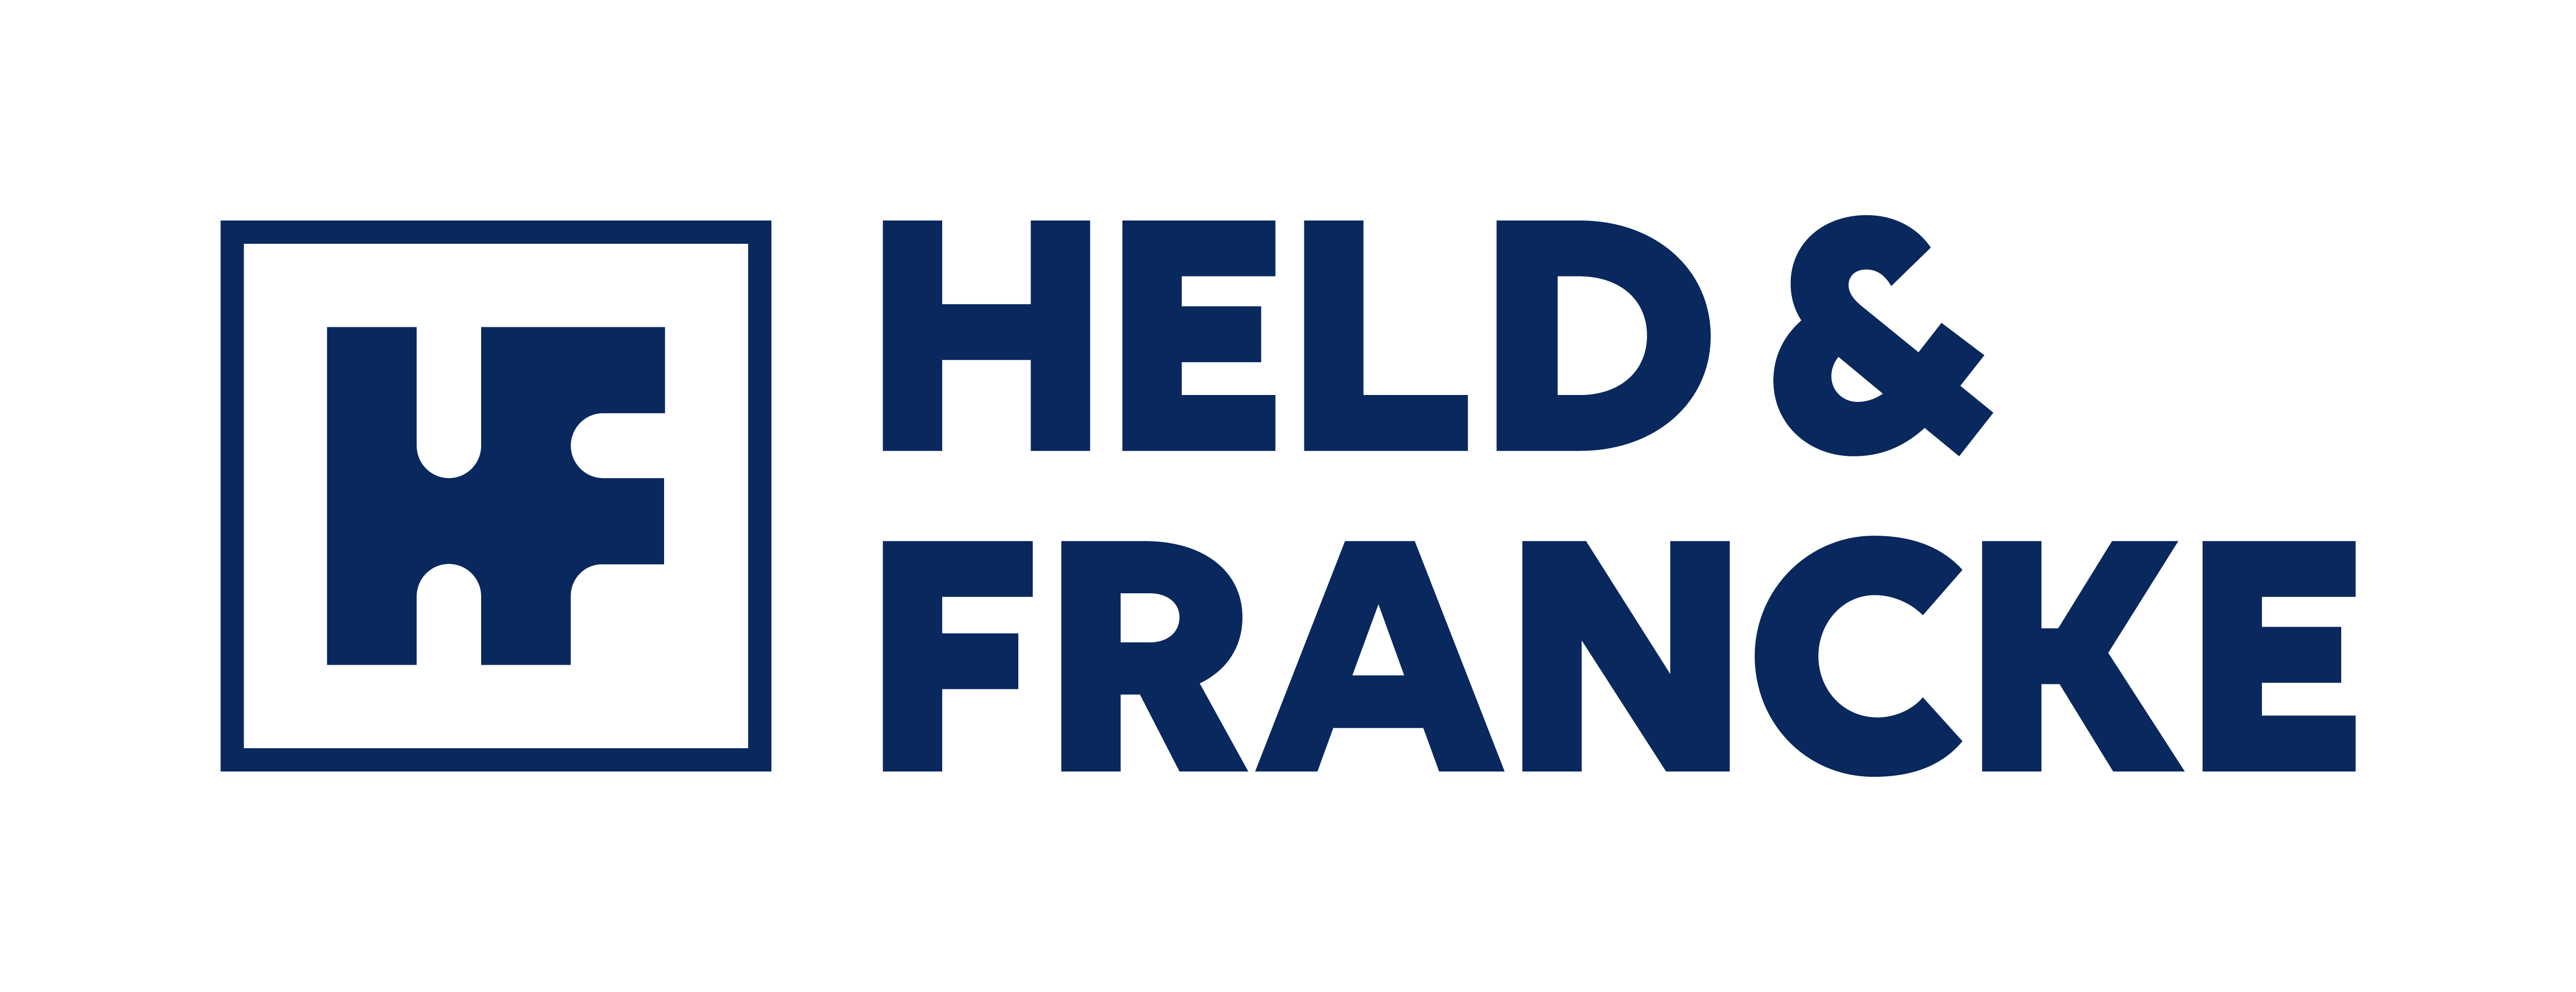 Held & Franke - Logo - Netzwerkpartner Infinity Business Network